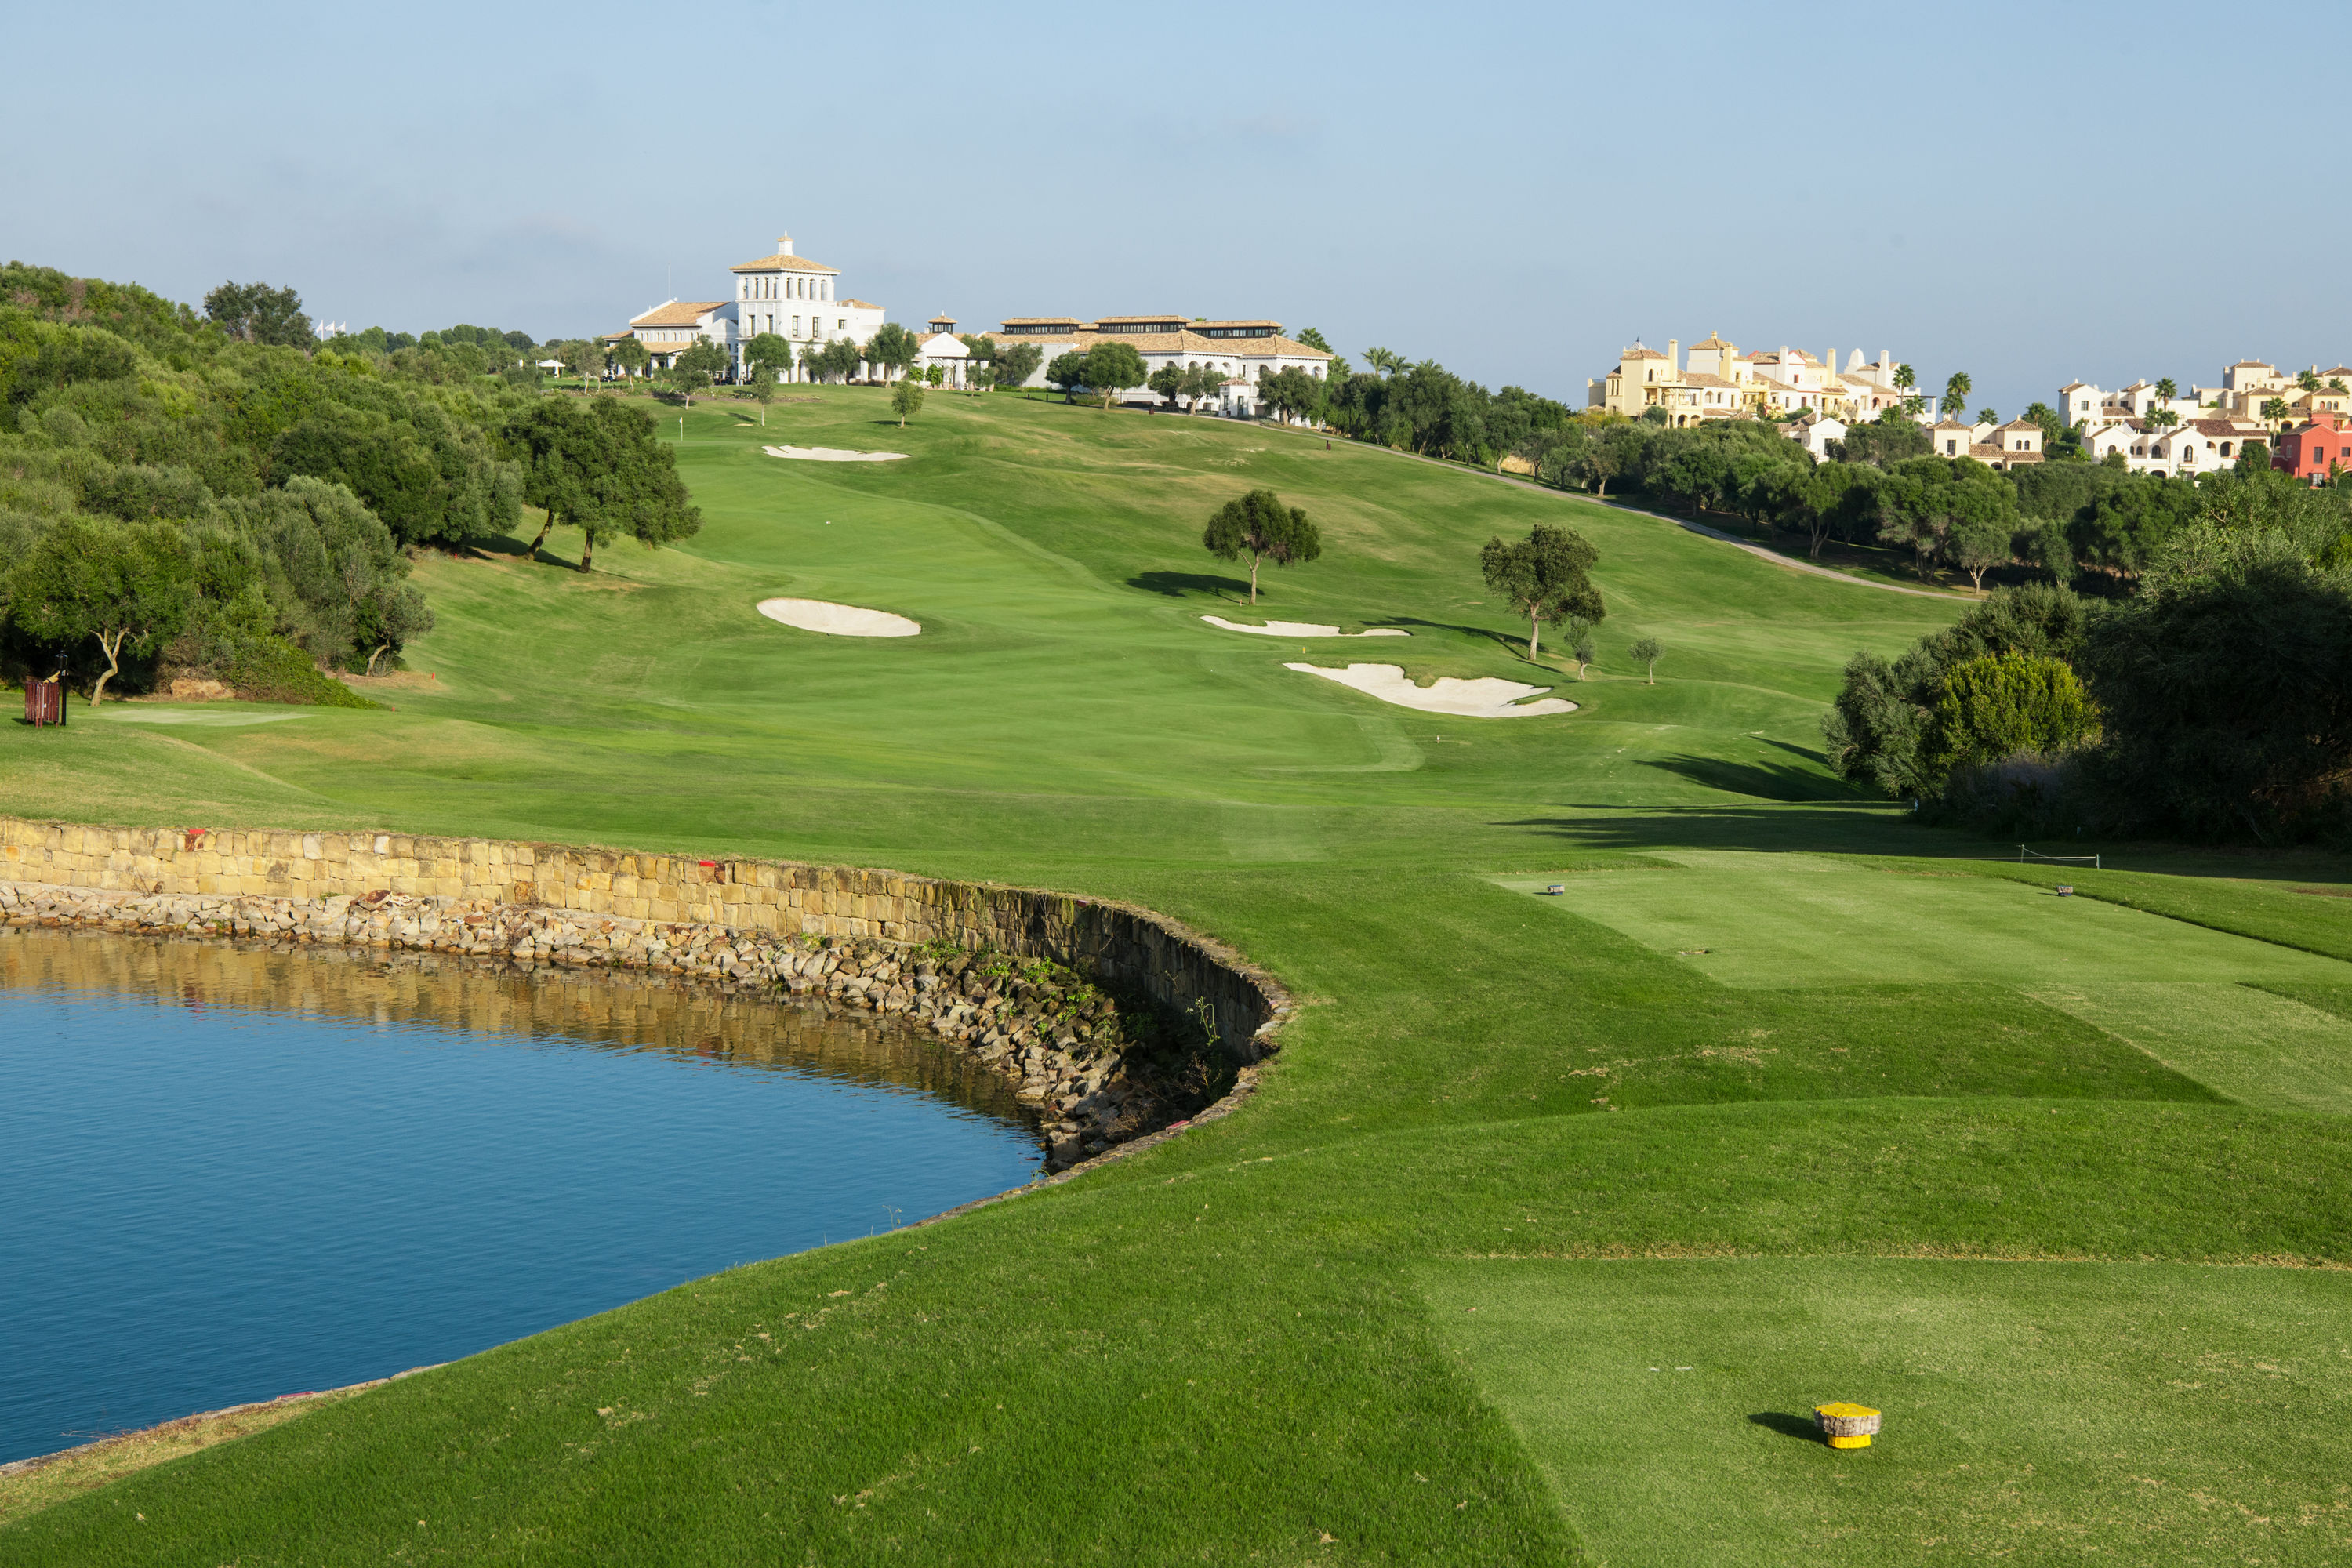 La Reserva Club Sotogrande - A dream golf course in Andalusia - Lecoingolf